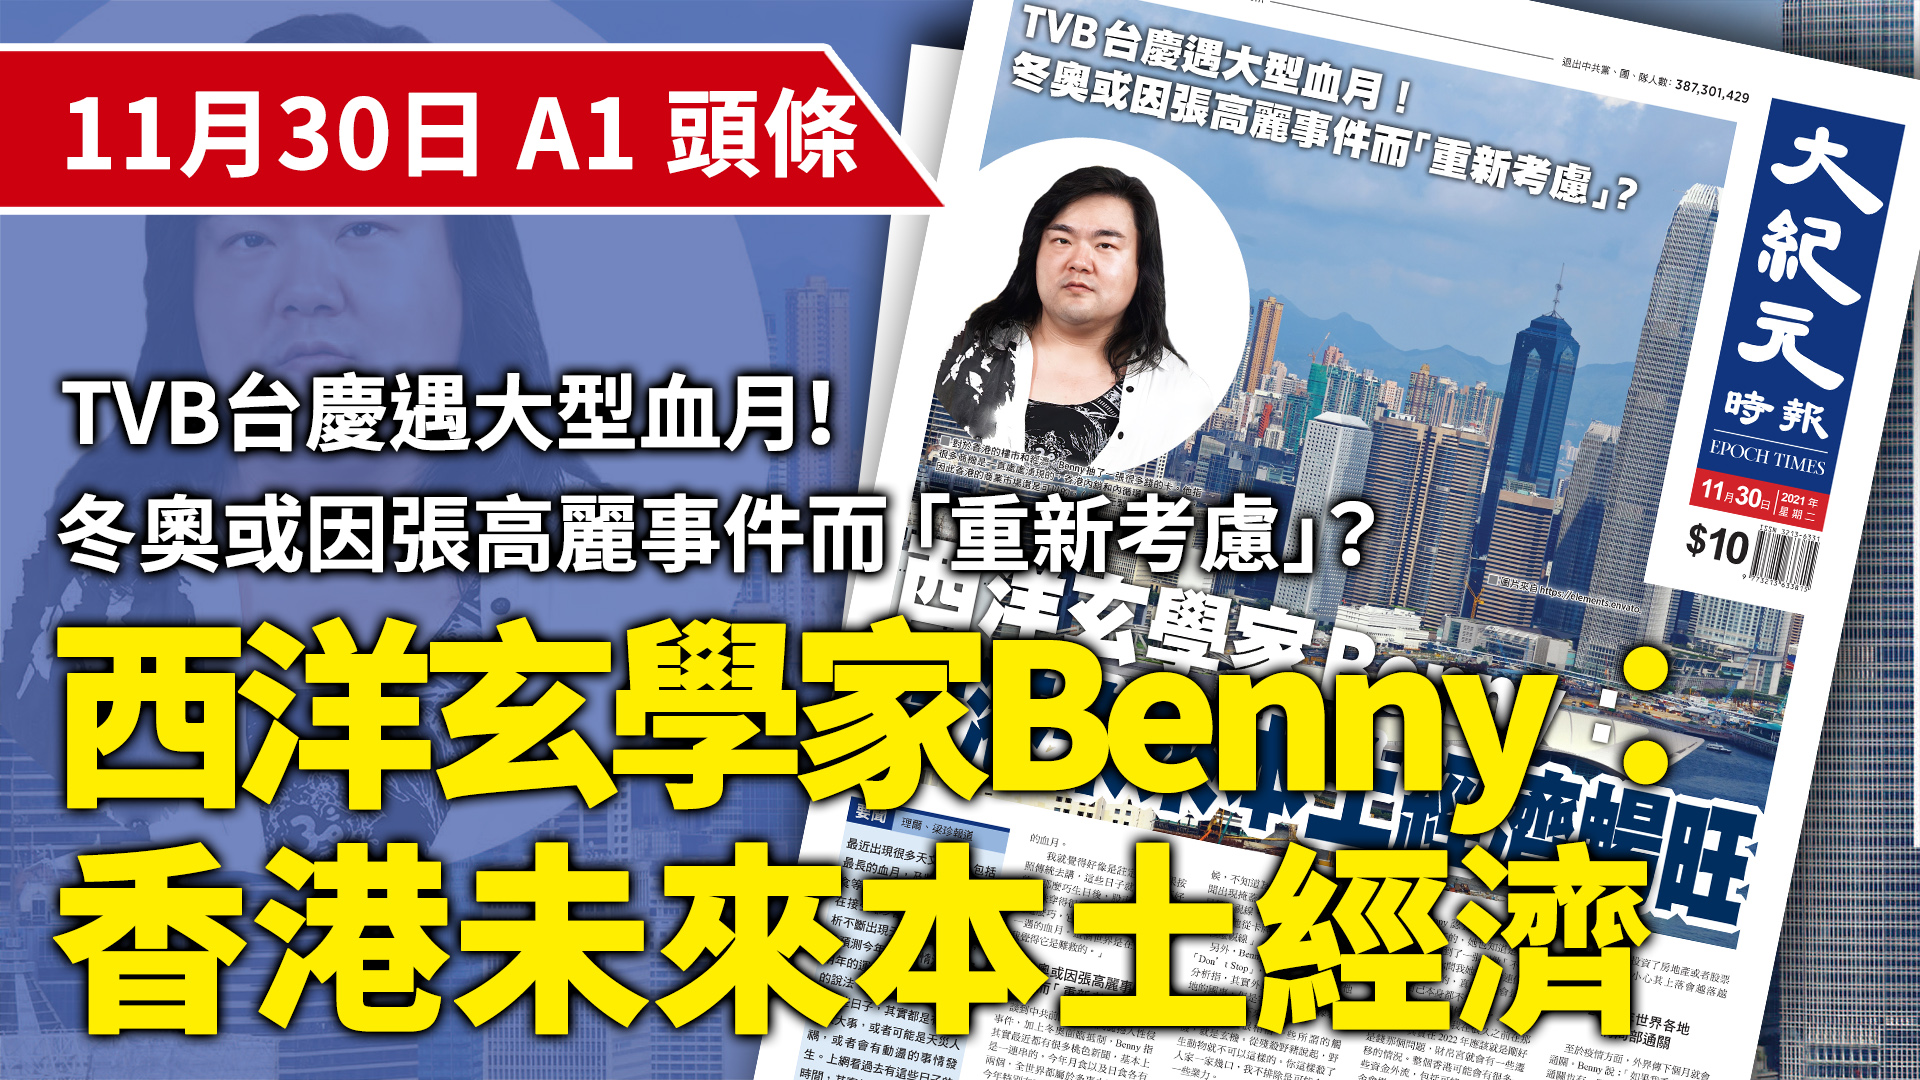 對於香港的樓市和經濟，Benny抽了一張很多錢的卡。他指 很多商機是一直處處湧現的，香港內銷和內循環是比較穩固， 因此香港的商業市場還是可以的。（大紀元製圖）